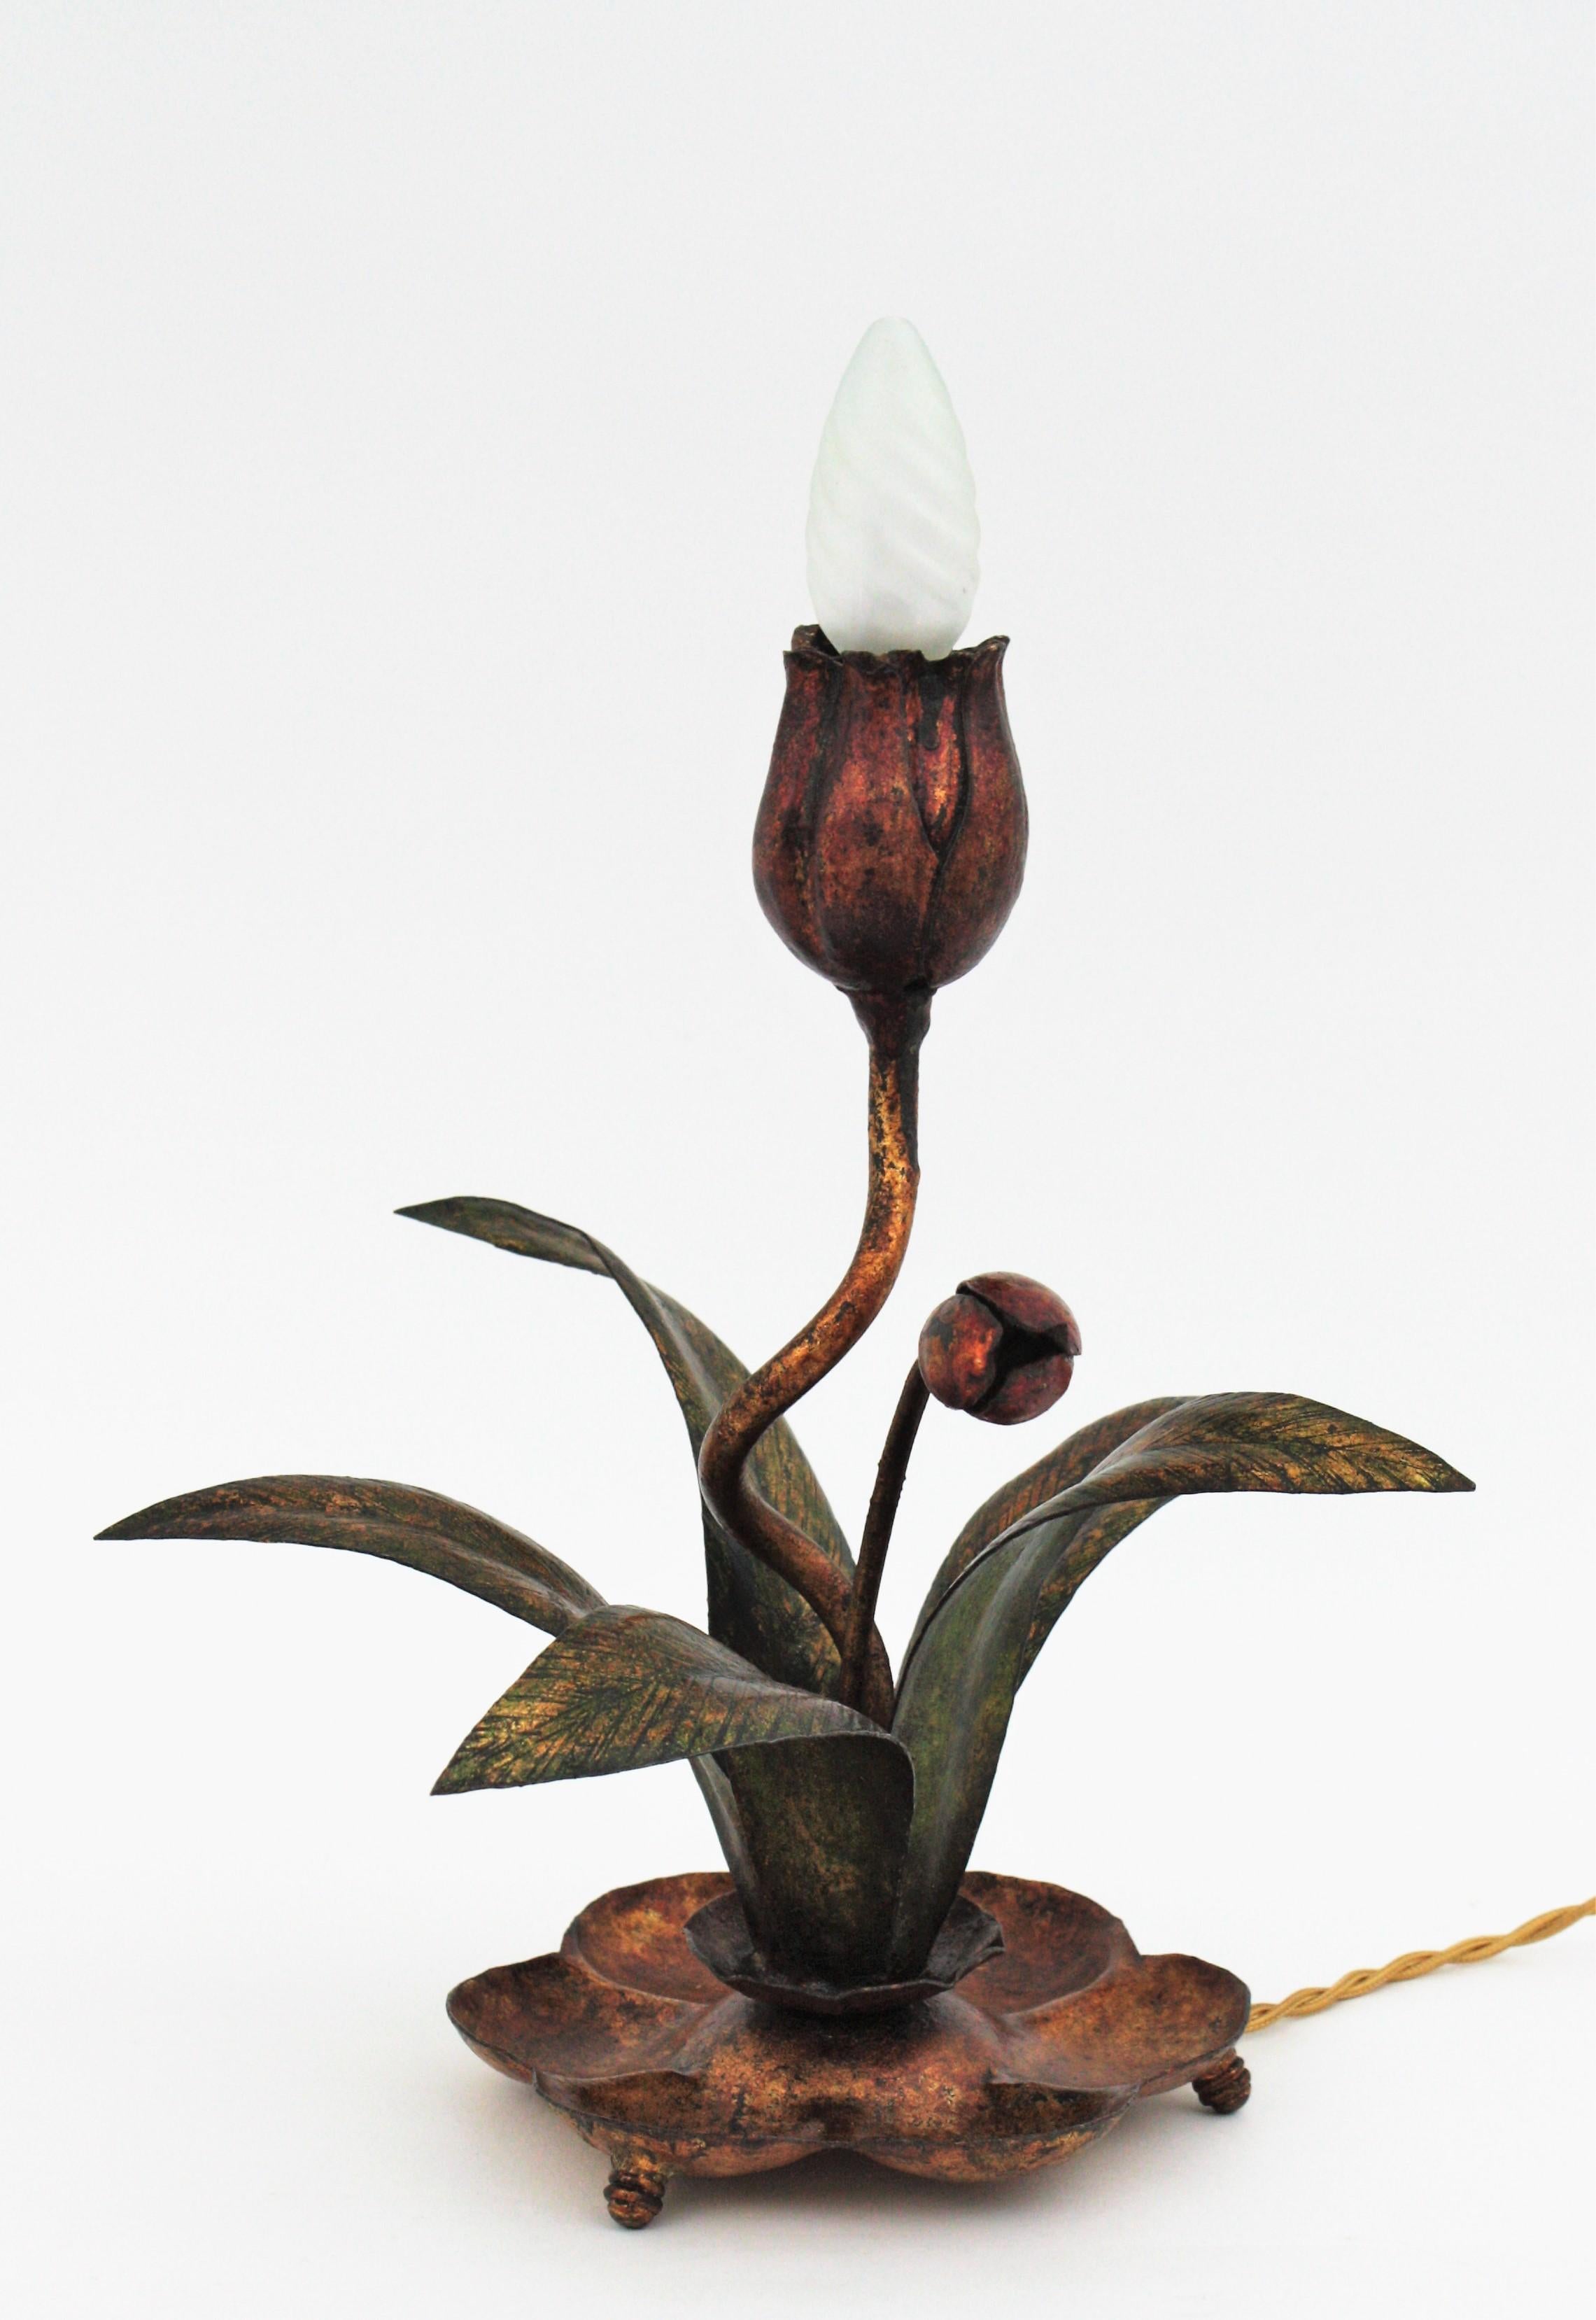 Lampe de table à fleurs en métal doré Polychomed, Espagne, années 1930.
Cette lampe de table représente une fleur rouge debout tenant une ampoule. La fleur s'élève sur une plante aux feuilles vertes. Un petit bouton de fleur complète la lampe.
Cette